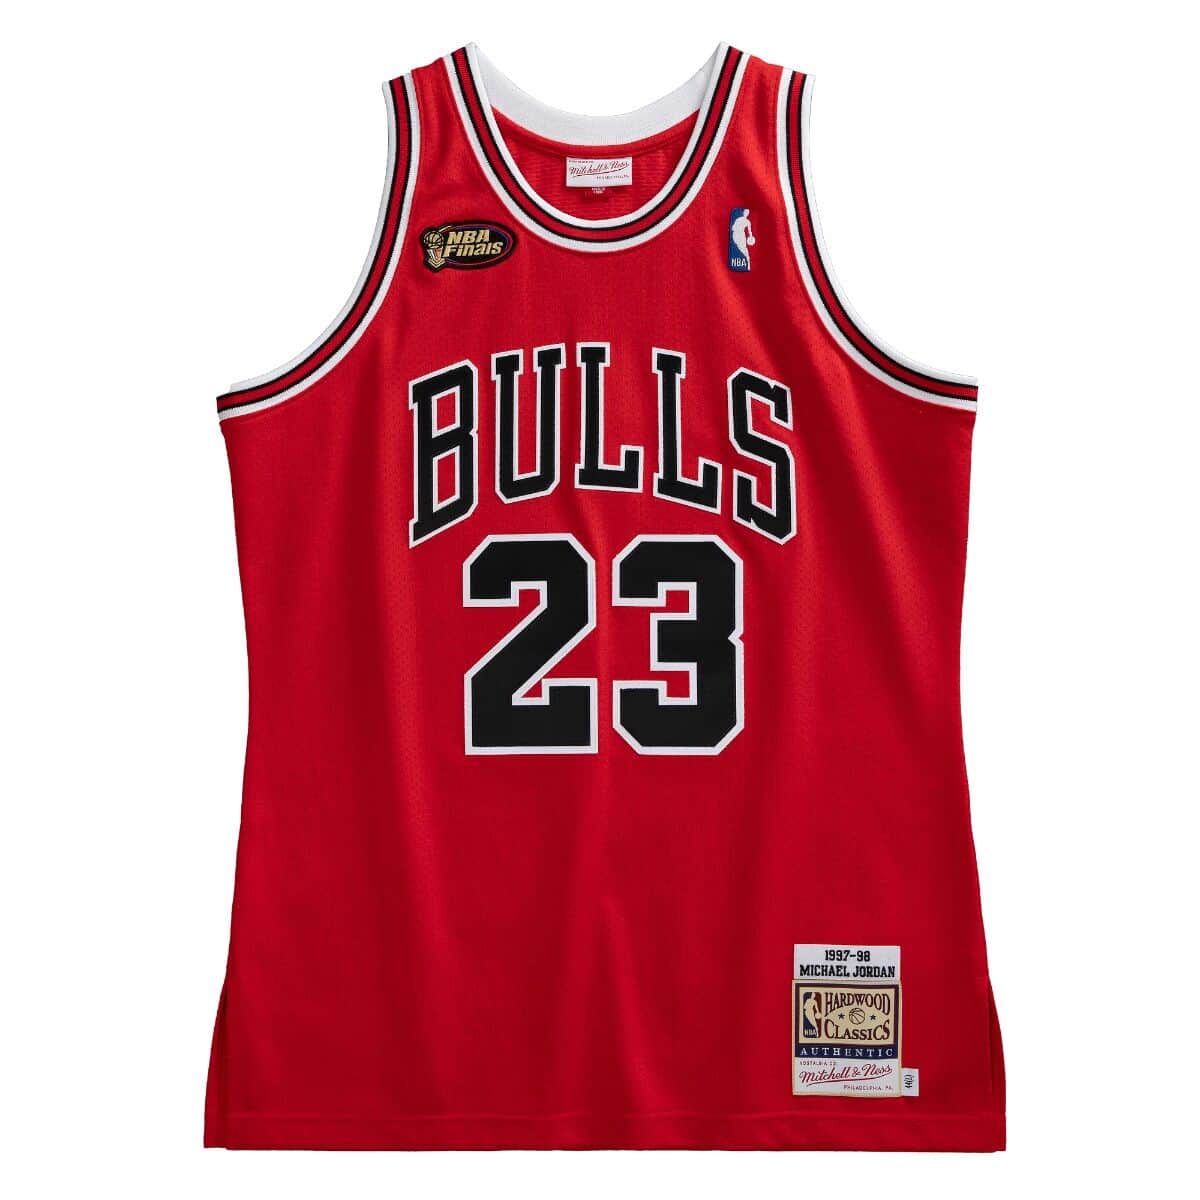 Authentic Michael Jordans Chicago Bulls 1997-98 Jersey